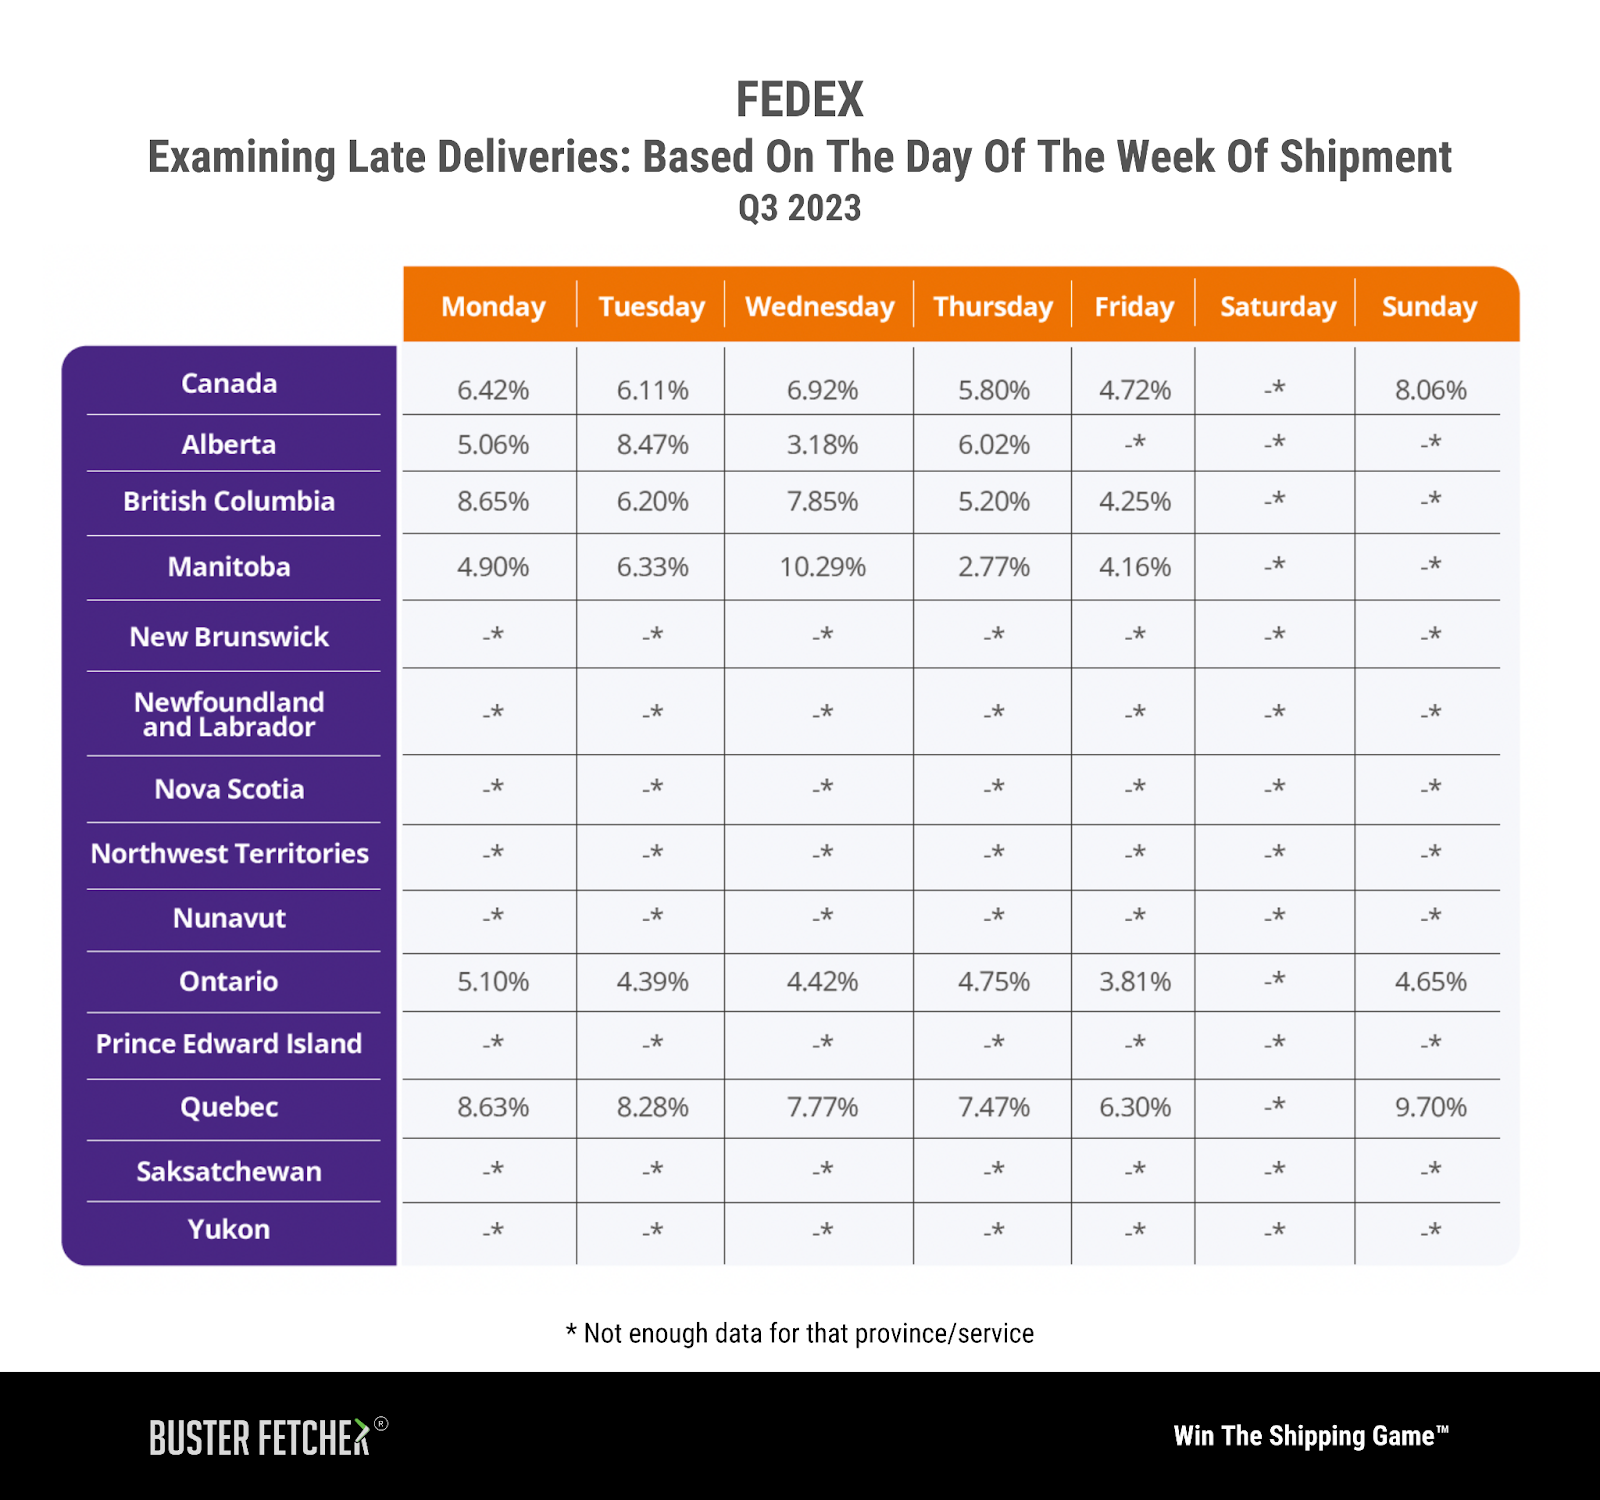 FedEx: Analyzing Weekday Performances and Regional Anomalies